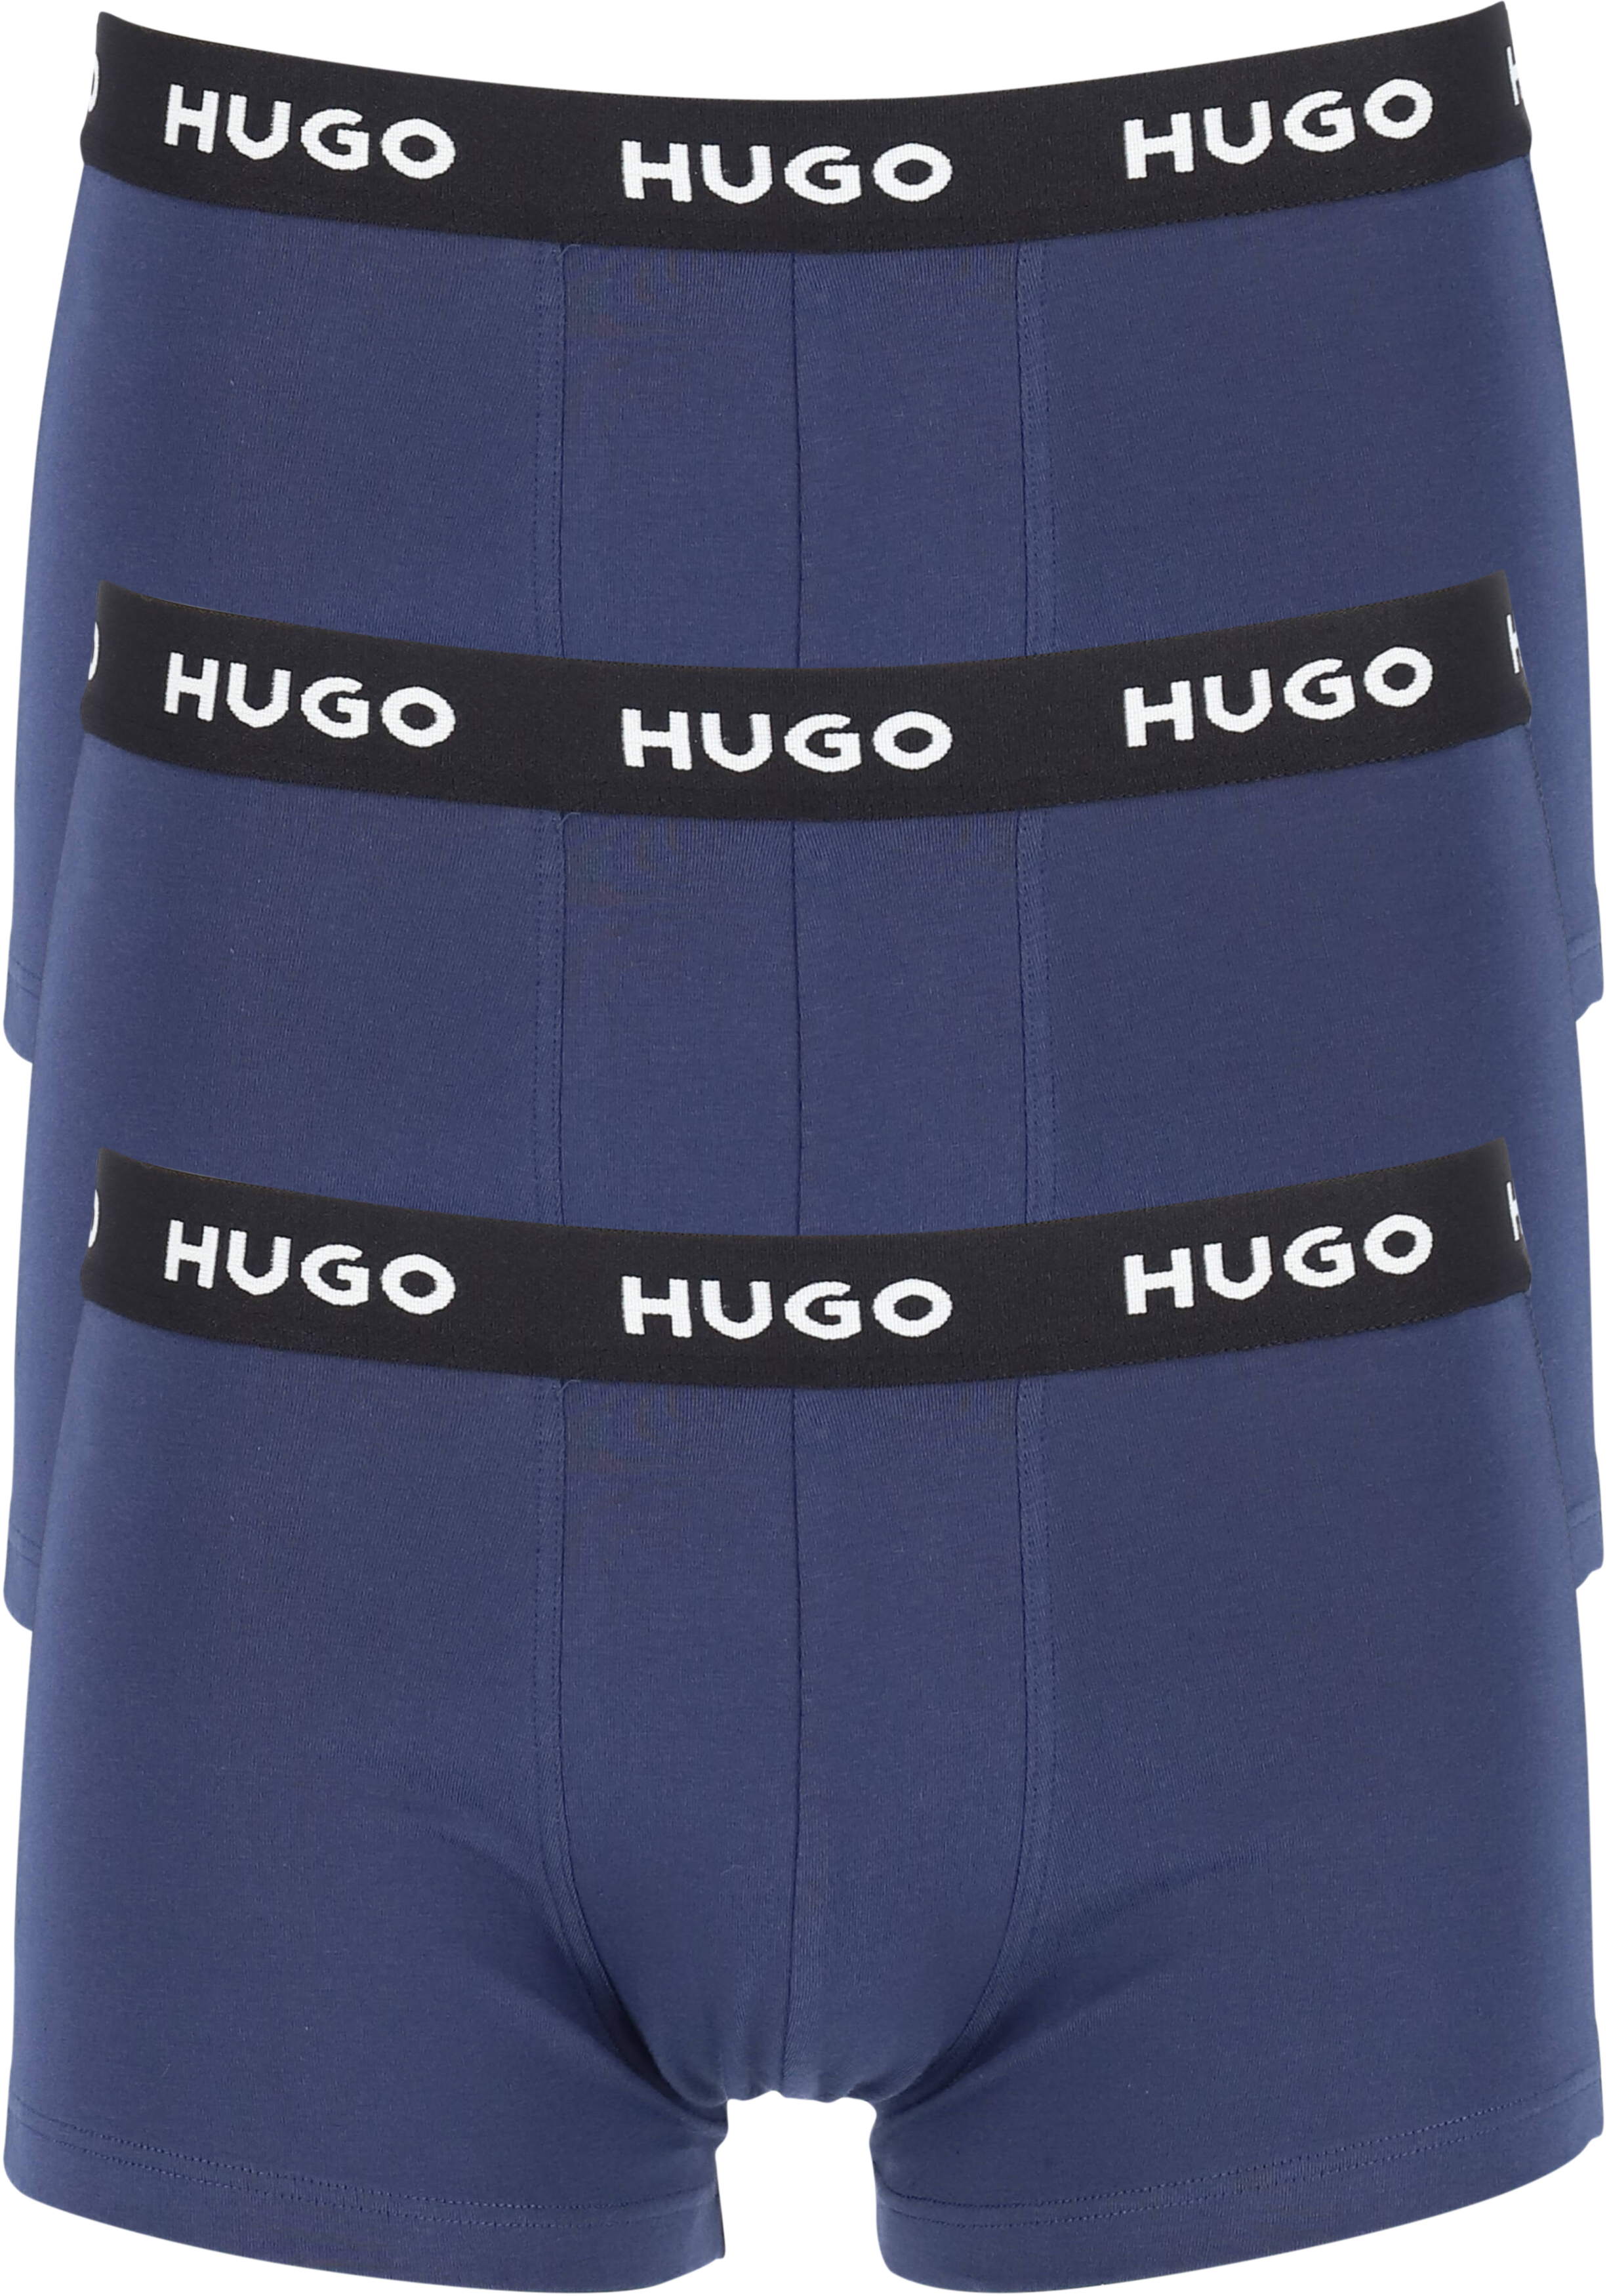 HUGO trunks (3-pack), heren boxers kort, navy